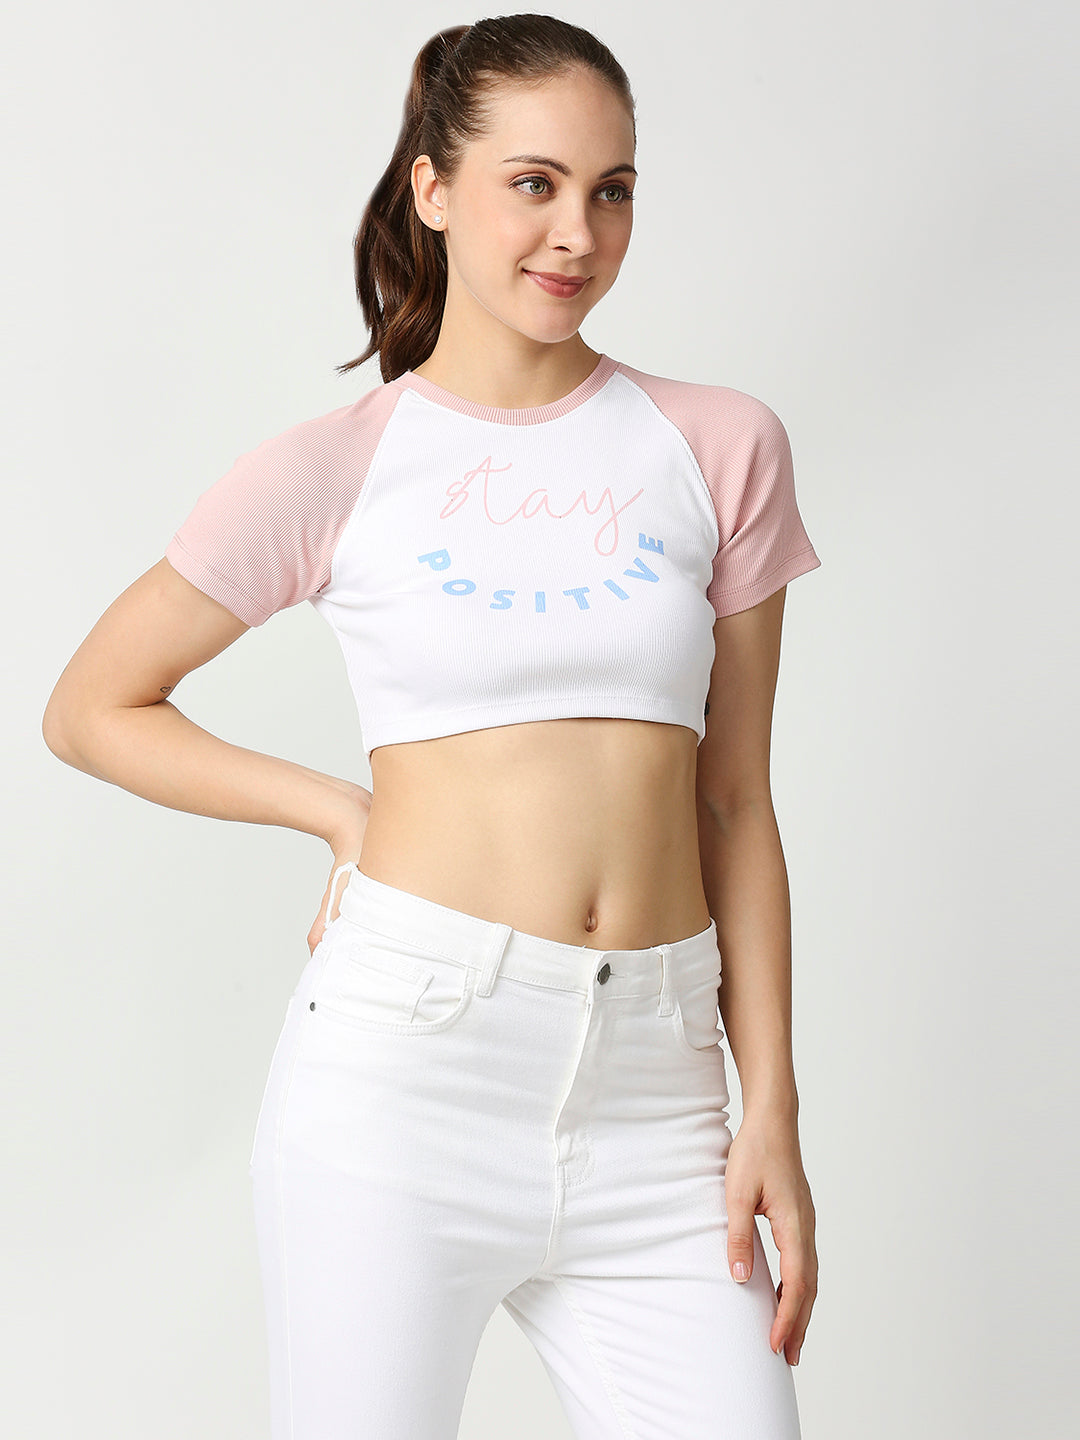 Buy Blamblack Women's White & Pink Color Half Sleeves Crop Top